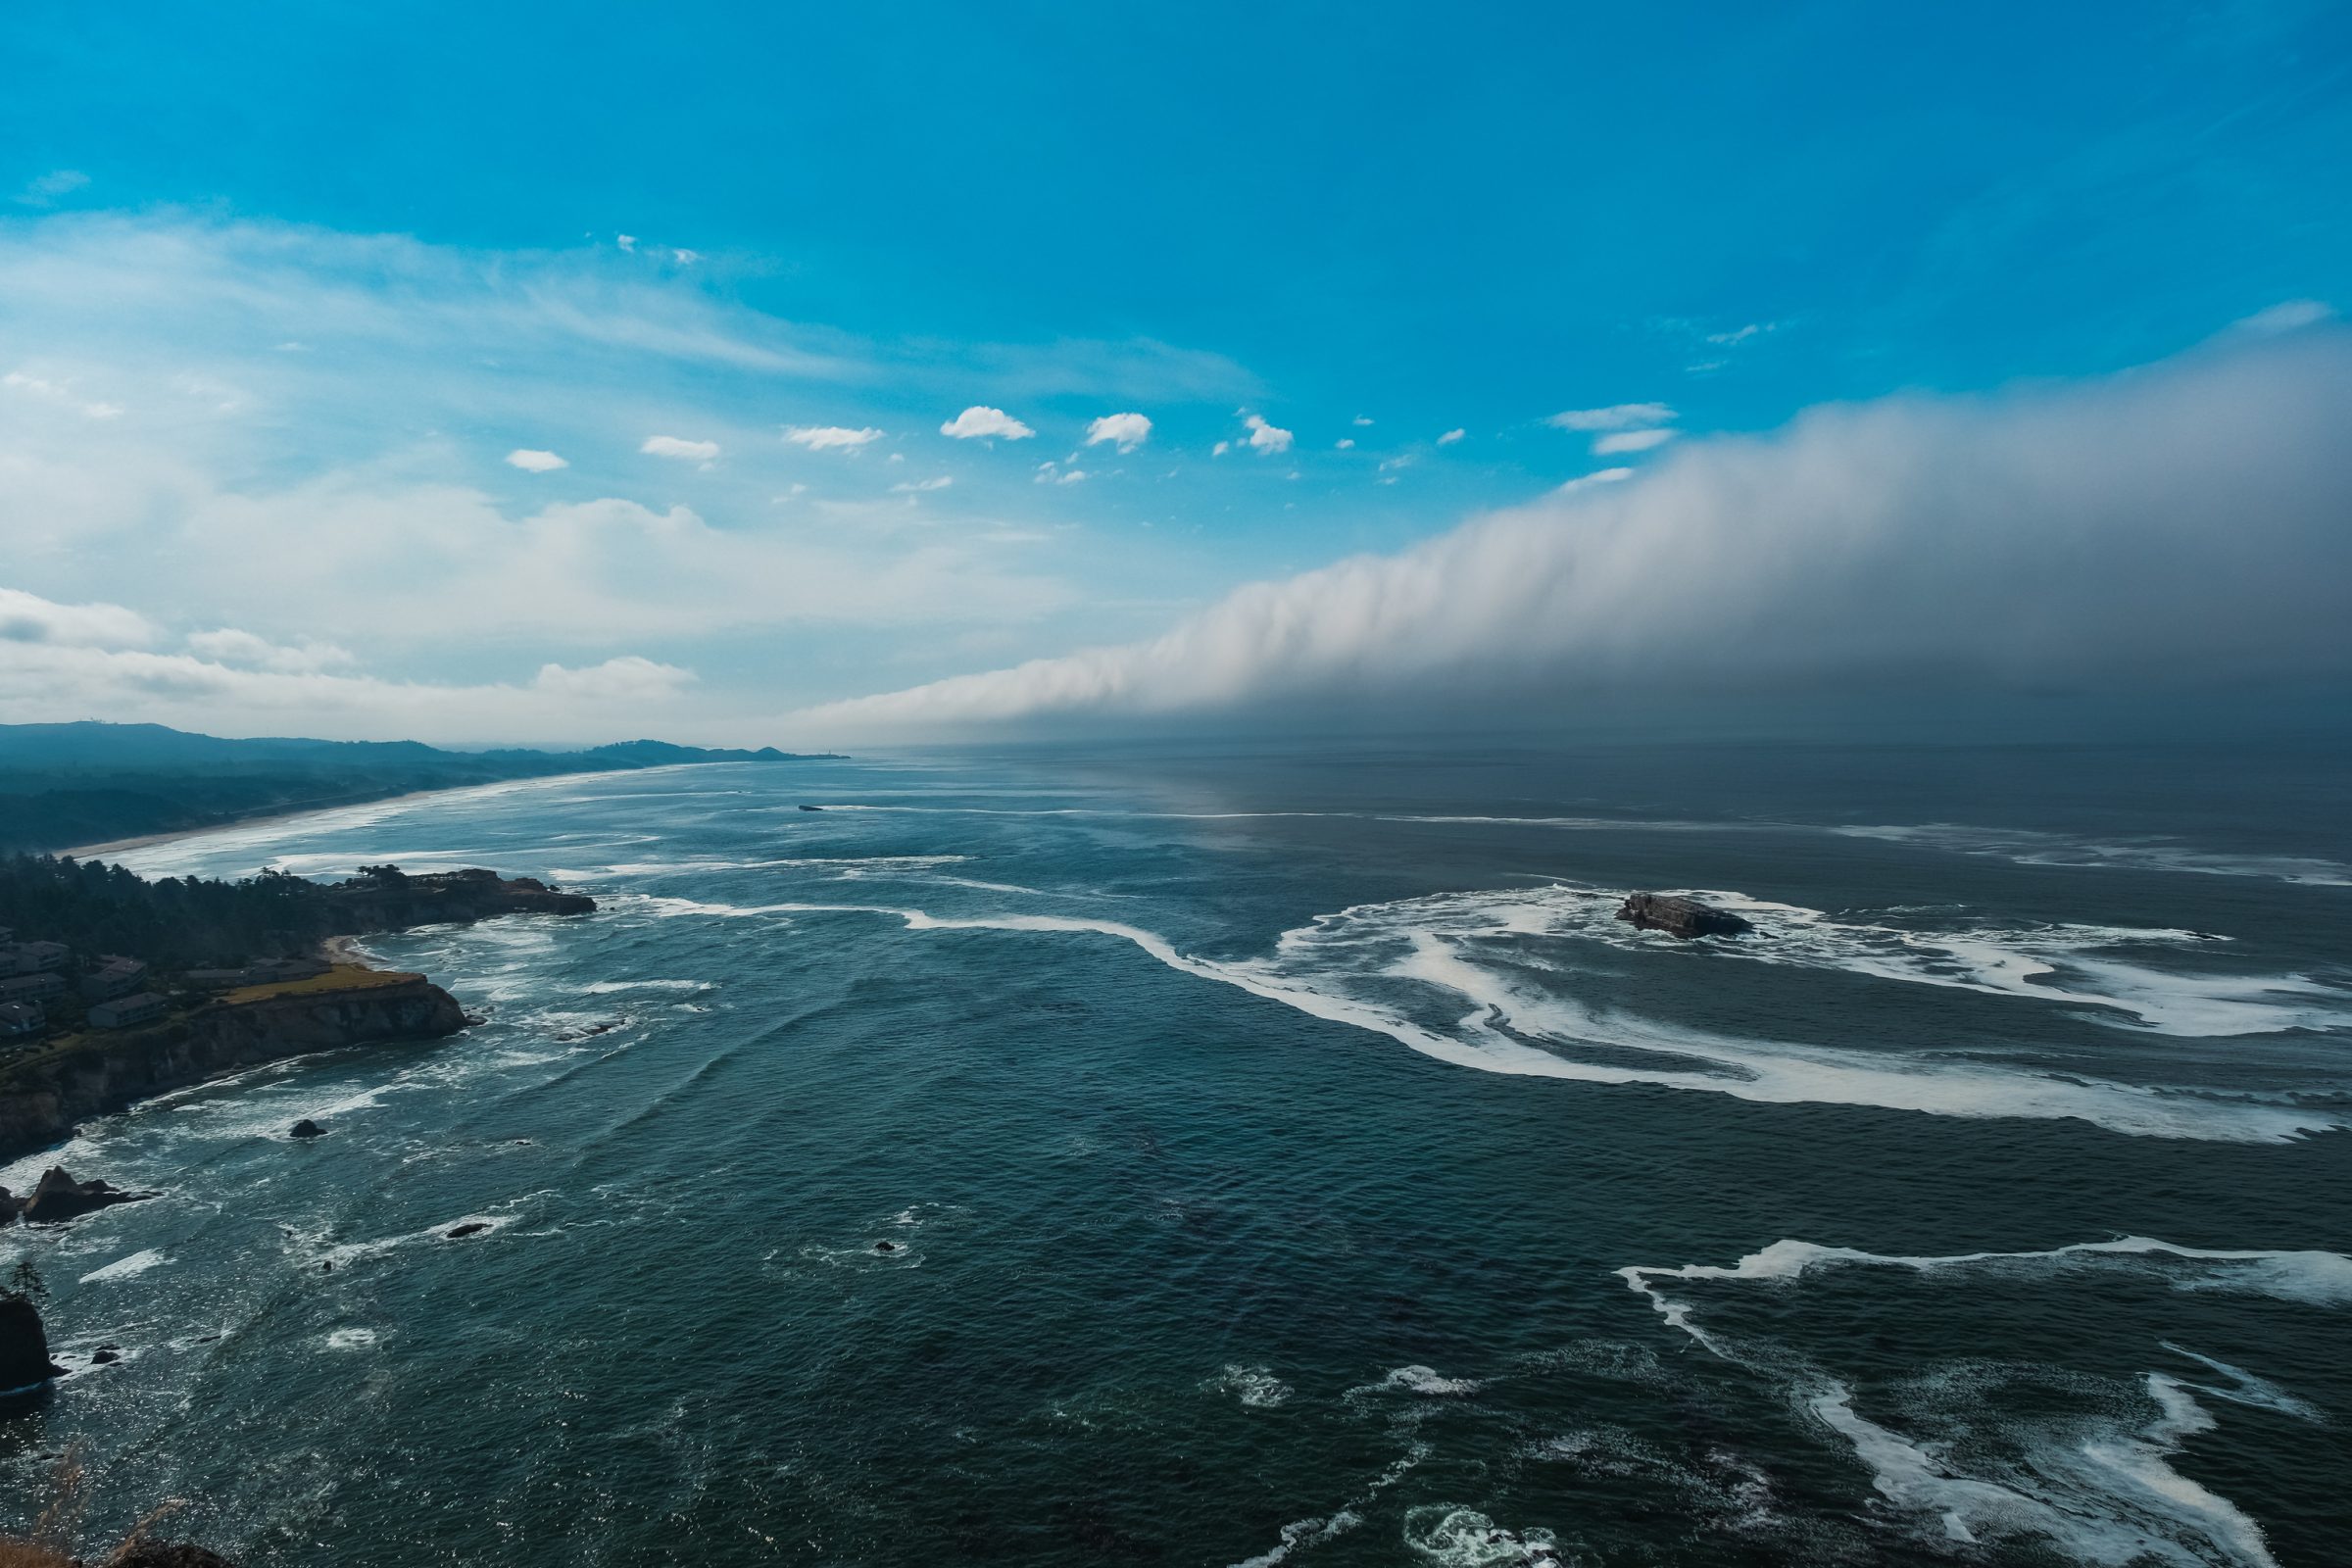 De dikke mistbank rolt de zee op en ineens is er weer kleur in het leven | Oregon Coast